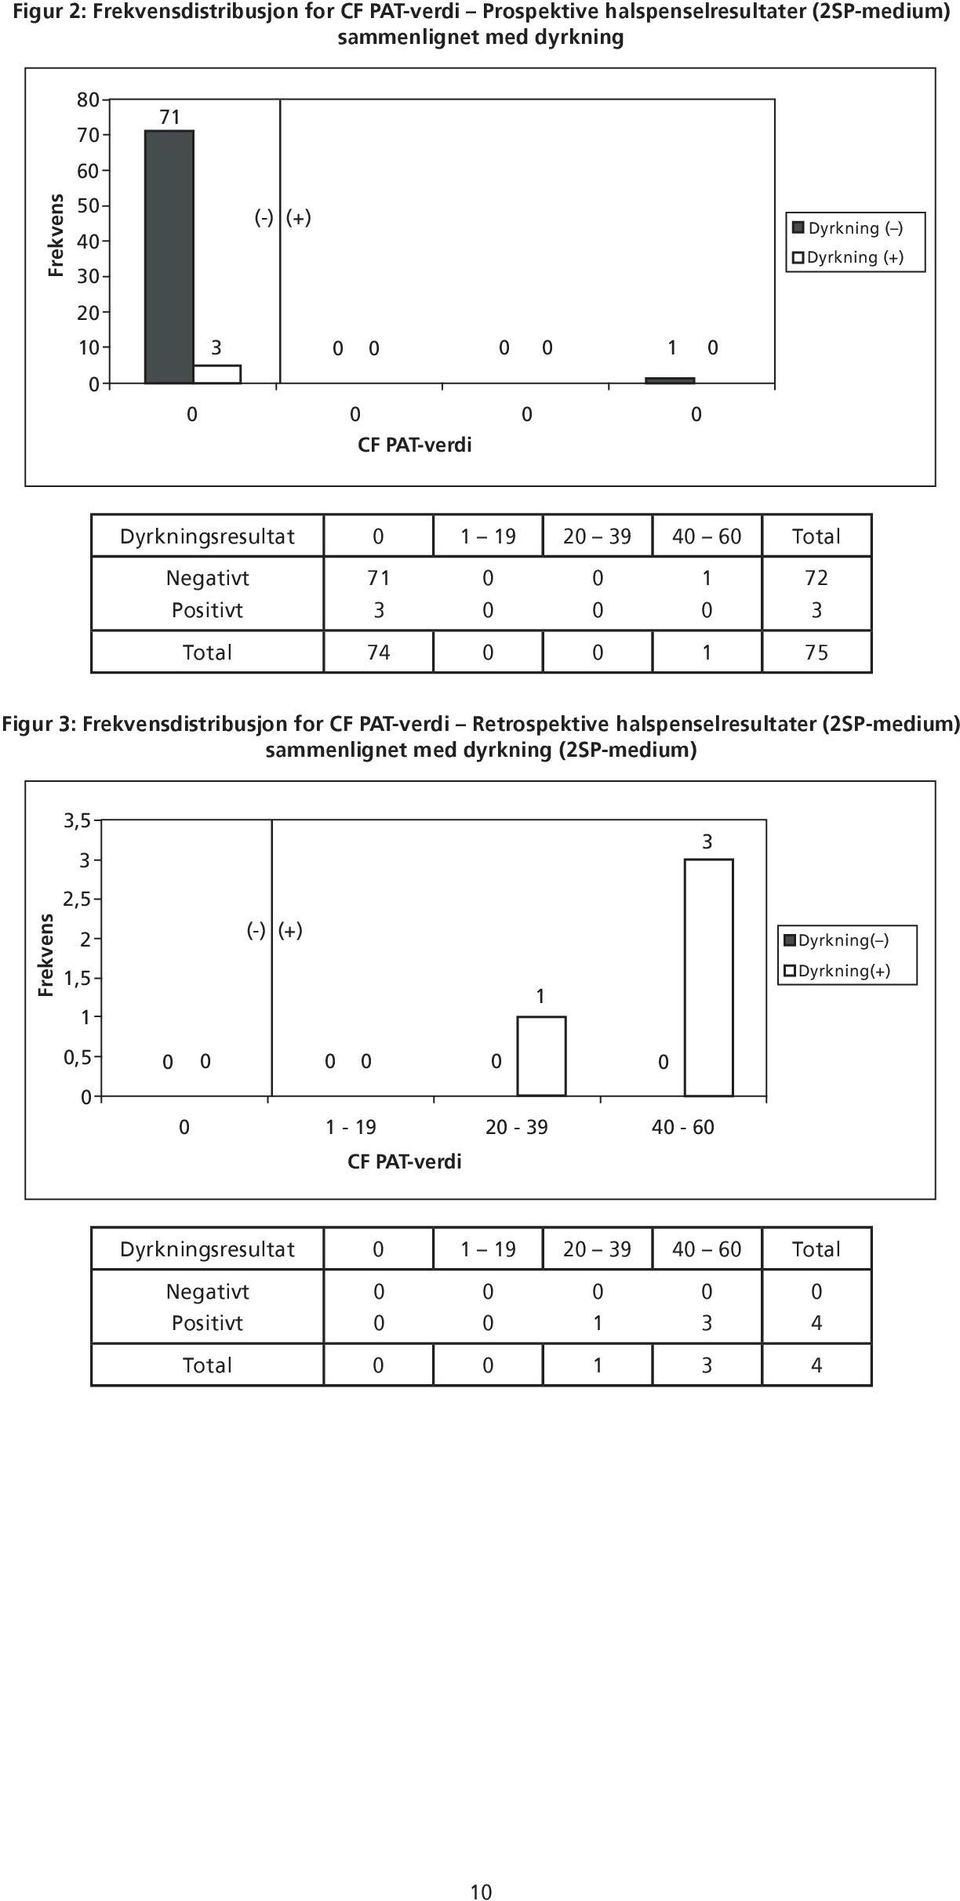 Frekvensdistribusjon for CF PAT-verdi Retrospektive halspenselresultater (2SP-medium) sammenlignet med dyrkning (2SP-medium),5 2,5 Frekvens